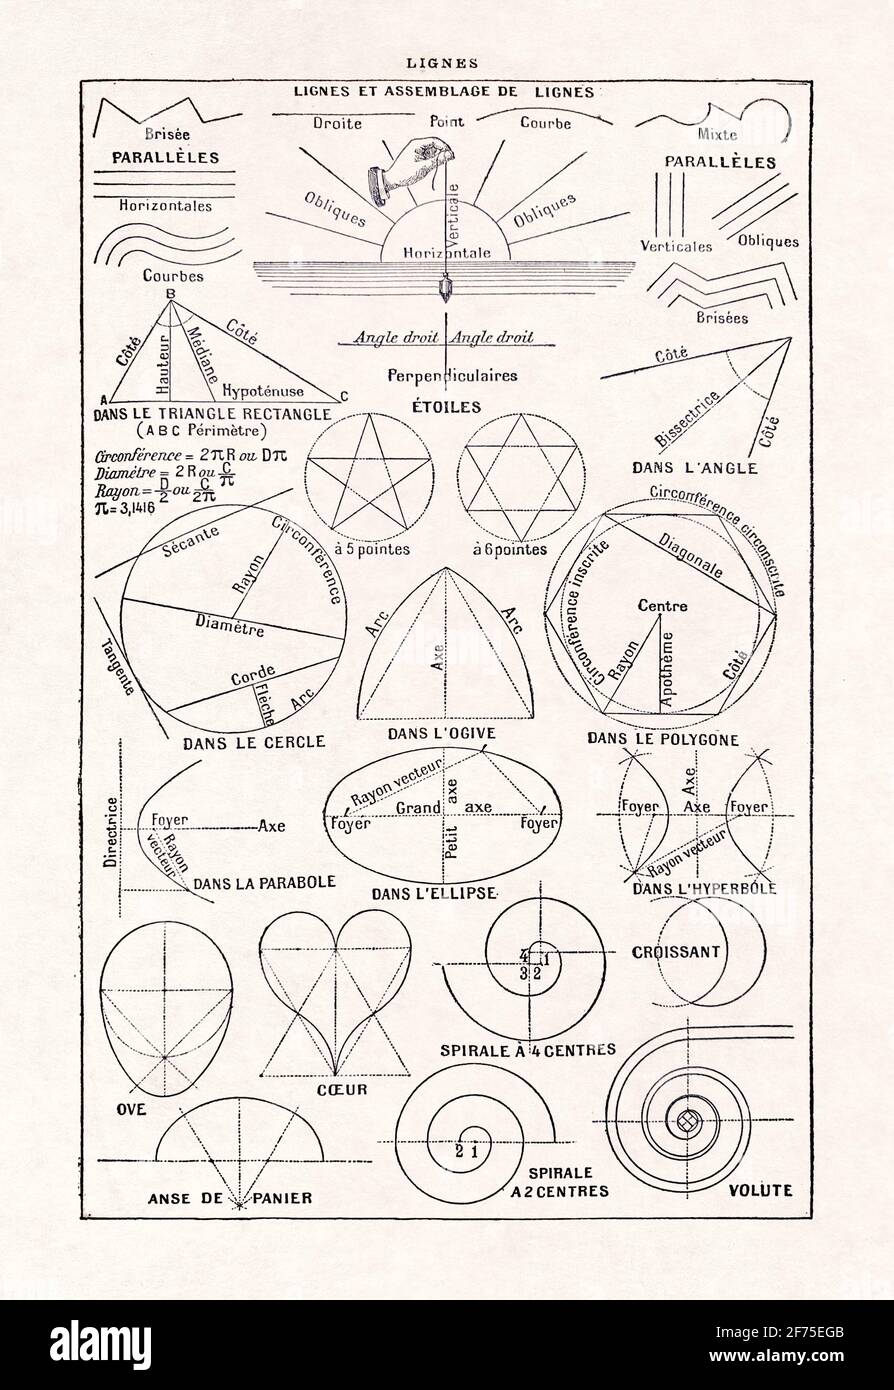 Vecchia illustrazione delle linee geometriche nel dizionario francese  'Dictionnaire complet Illustré' dell'editore Larousse nel 1889 Foto stock -  Alamy